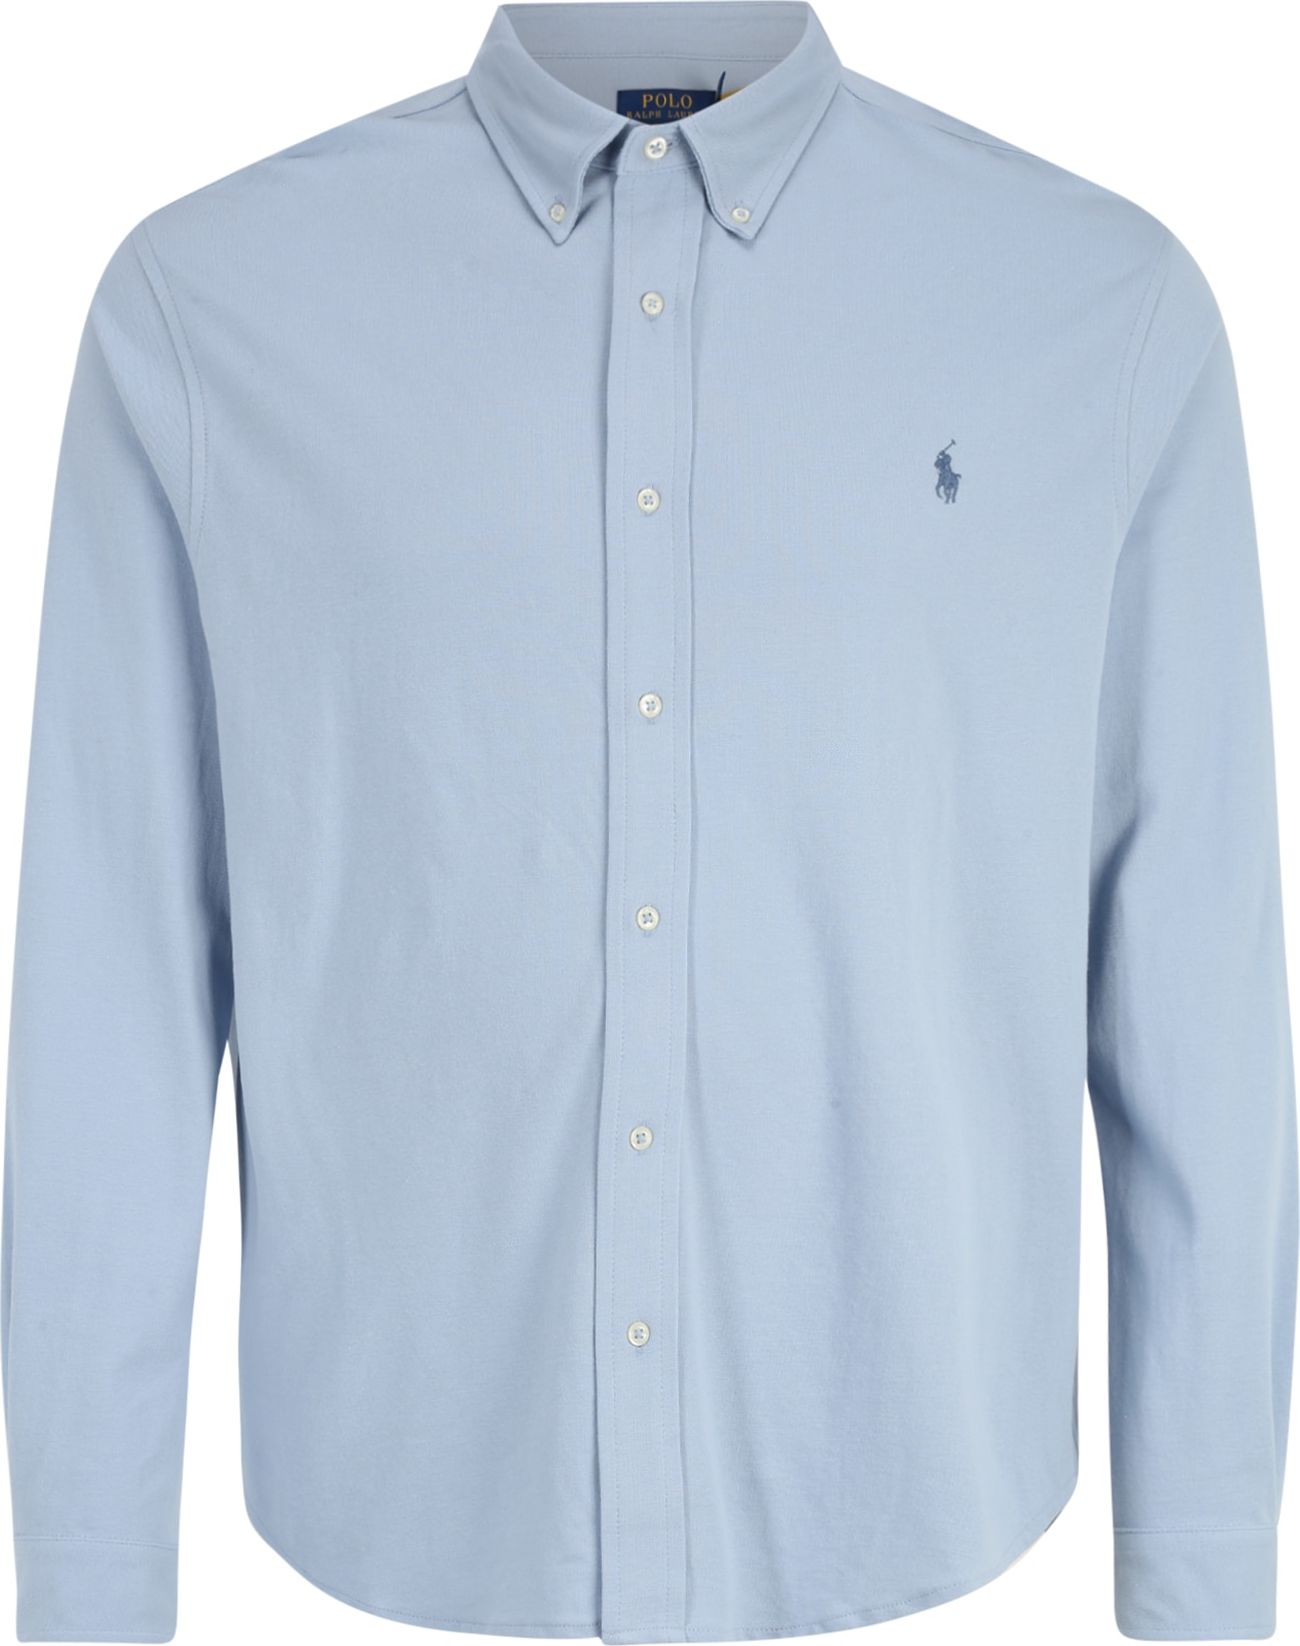 Košile Polo Ralph Lauren Big & Tall světlemodrá / tmavě modrá